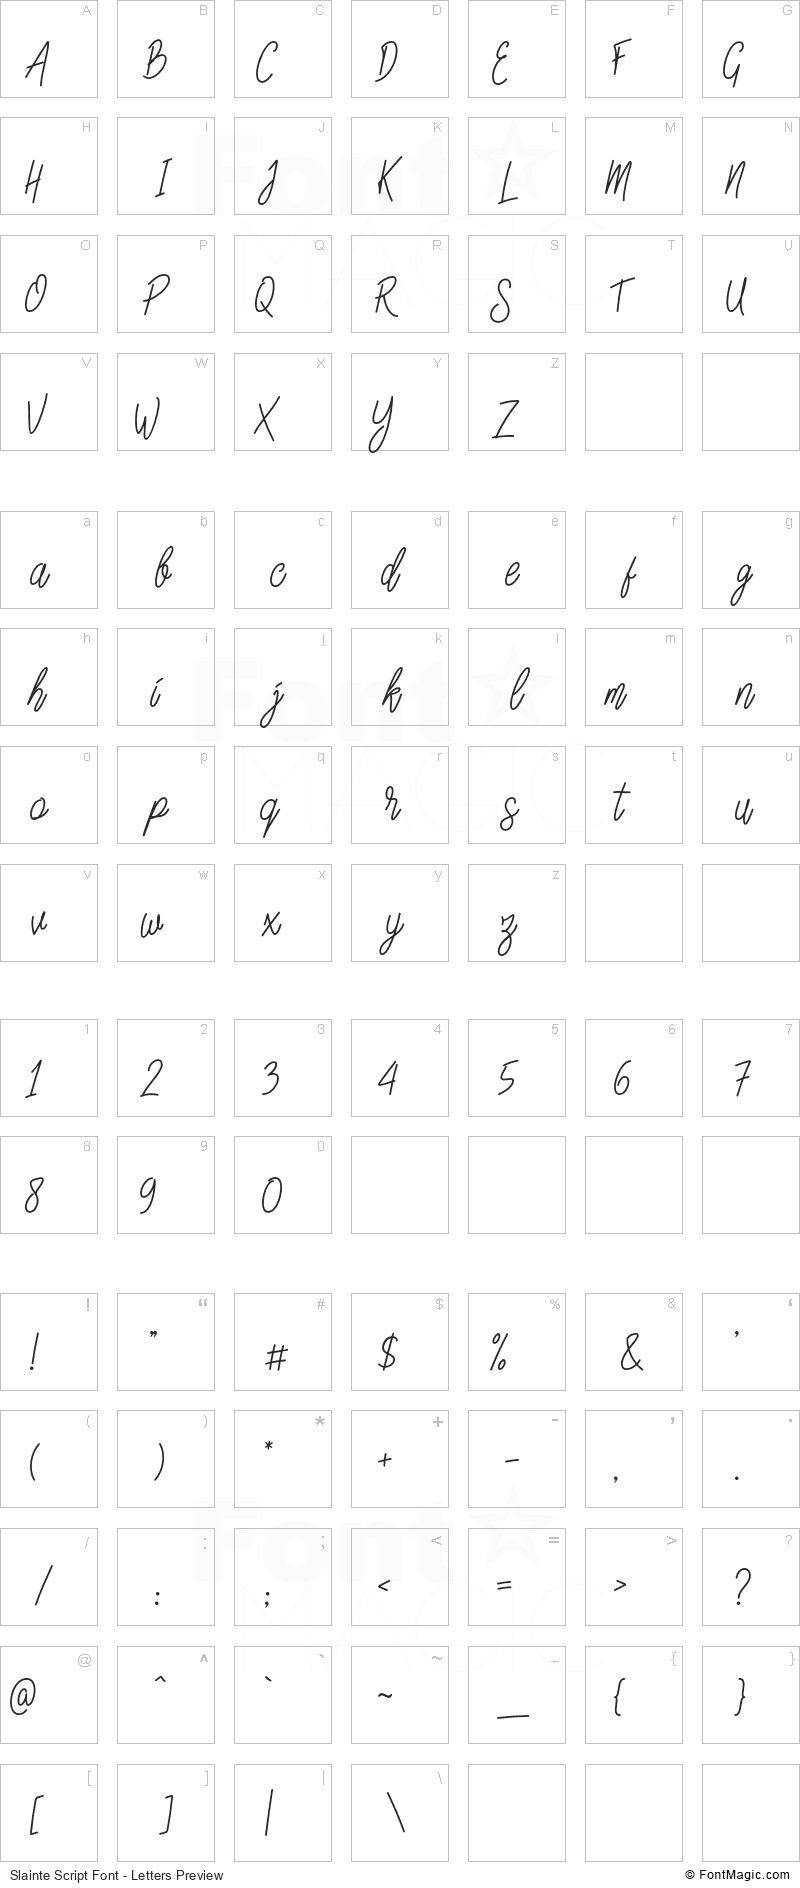 Slainte Script Font - All Latters Preview Chart